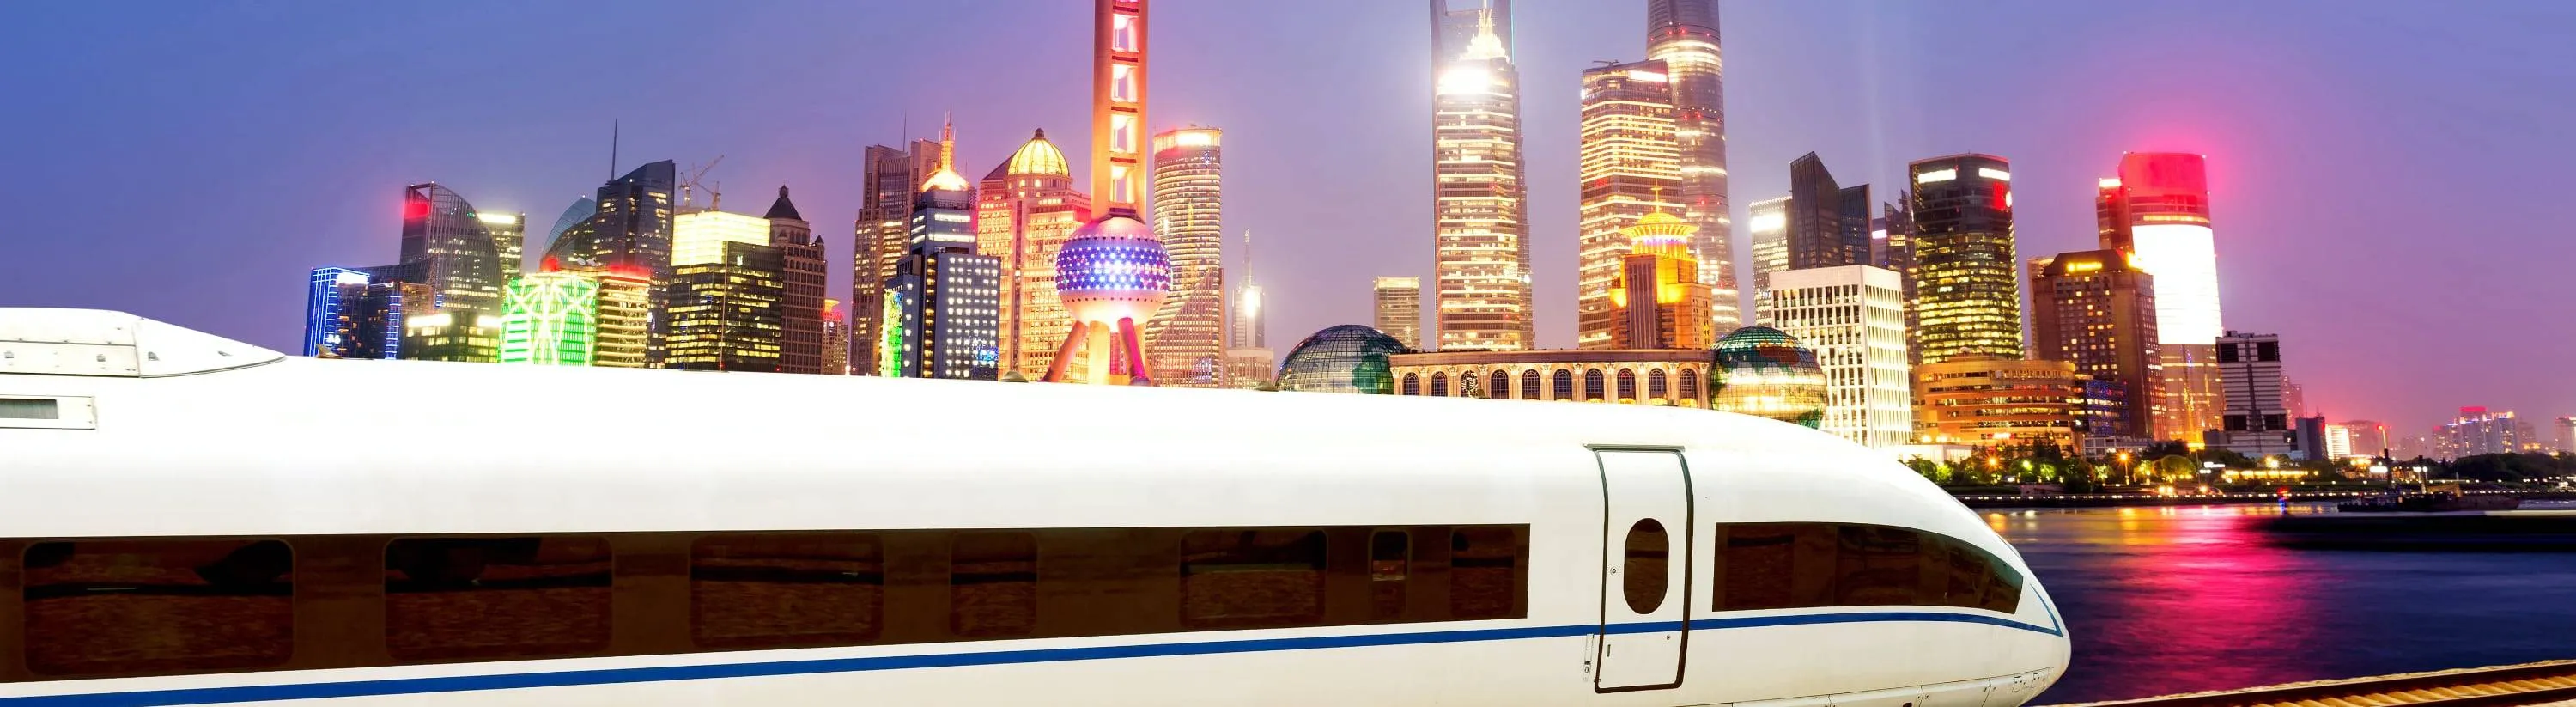 Suurima pikkusega metrooliinide võrk asub Shanghais - ReisiGuru.ee